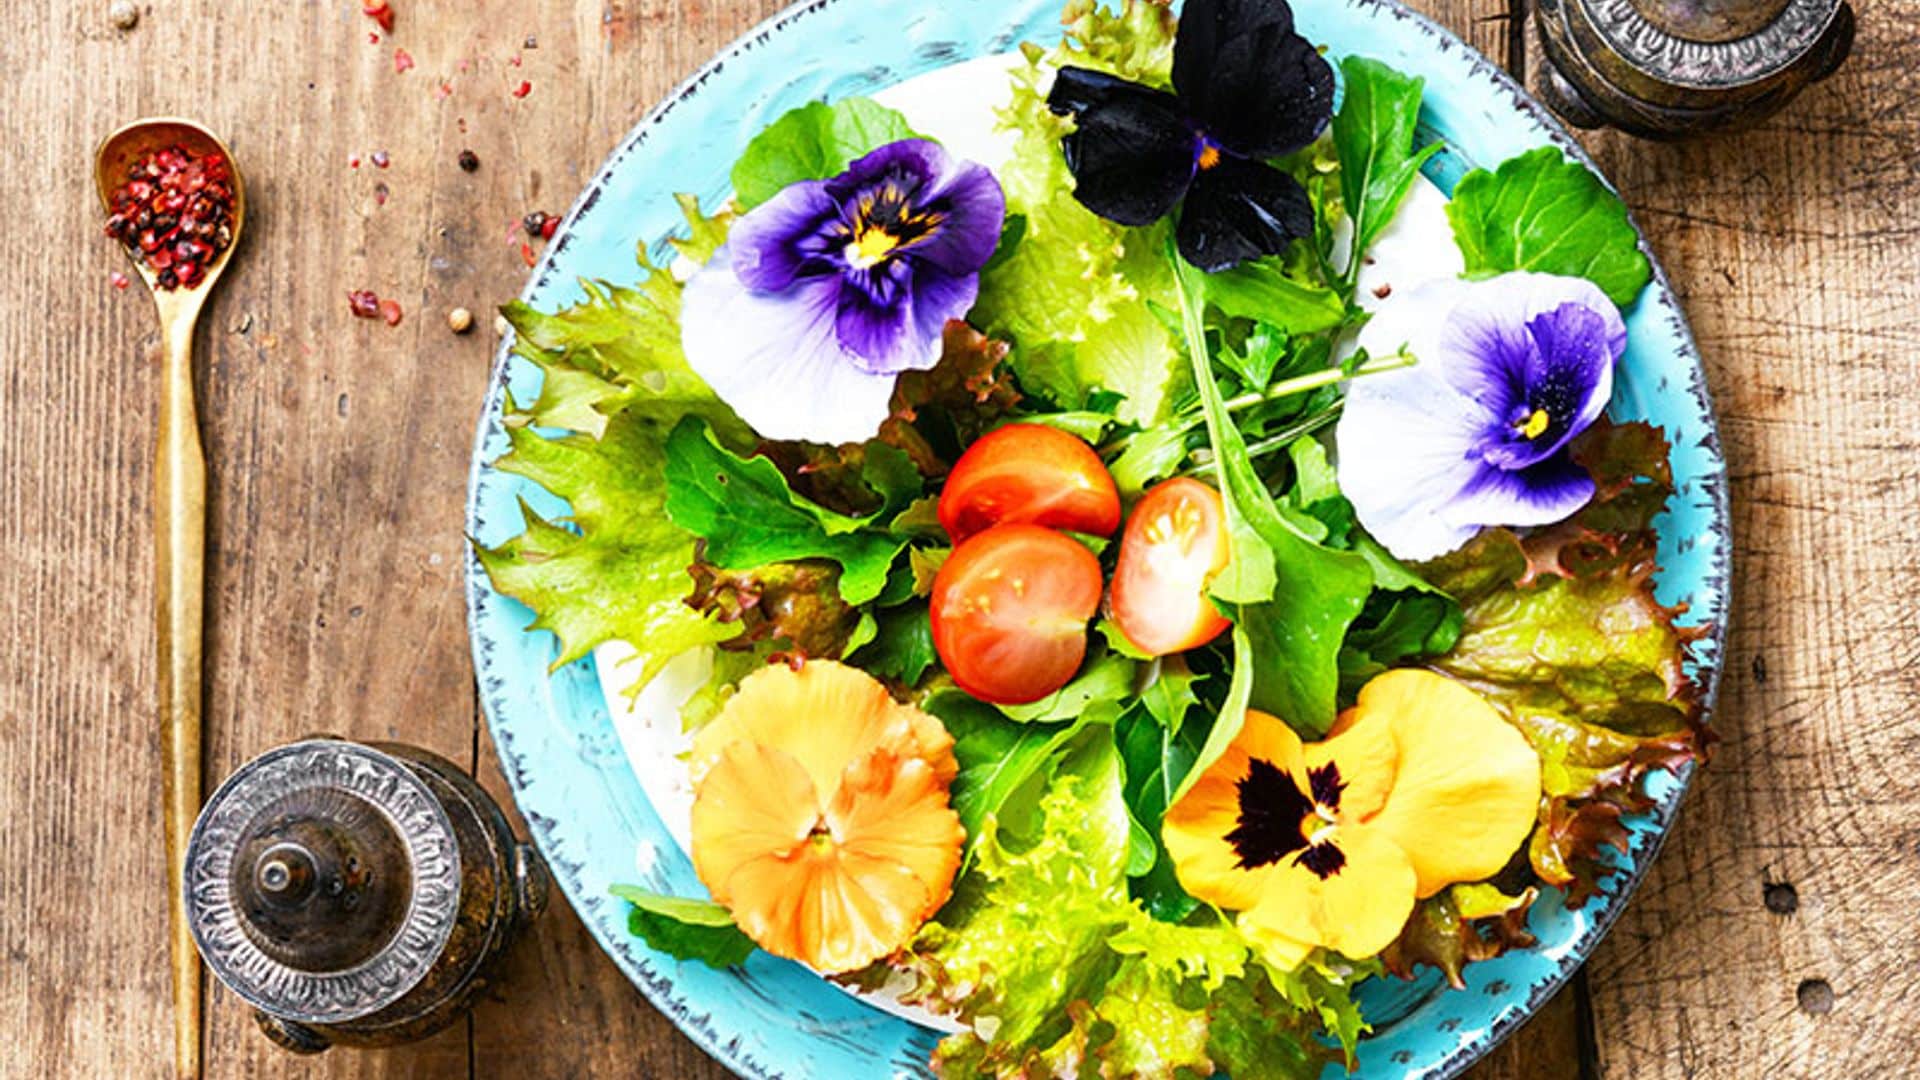 Cocina con flores: dale un toque de color y originalidad a tus platos